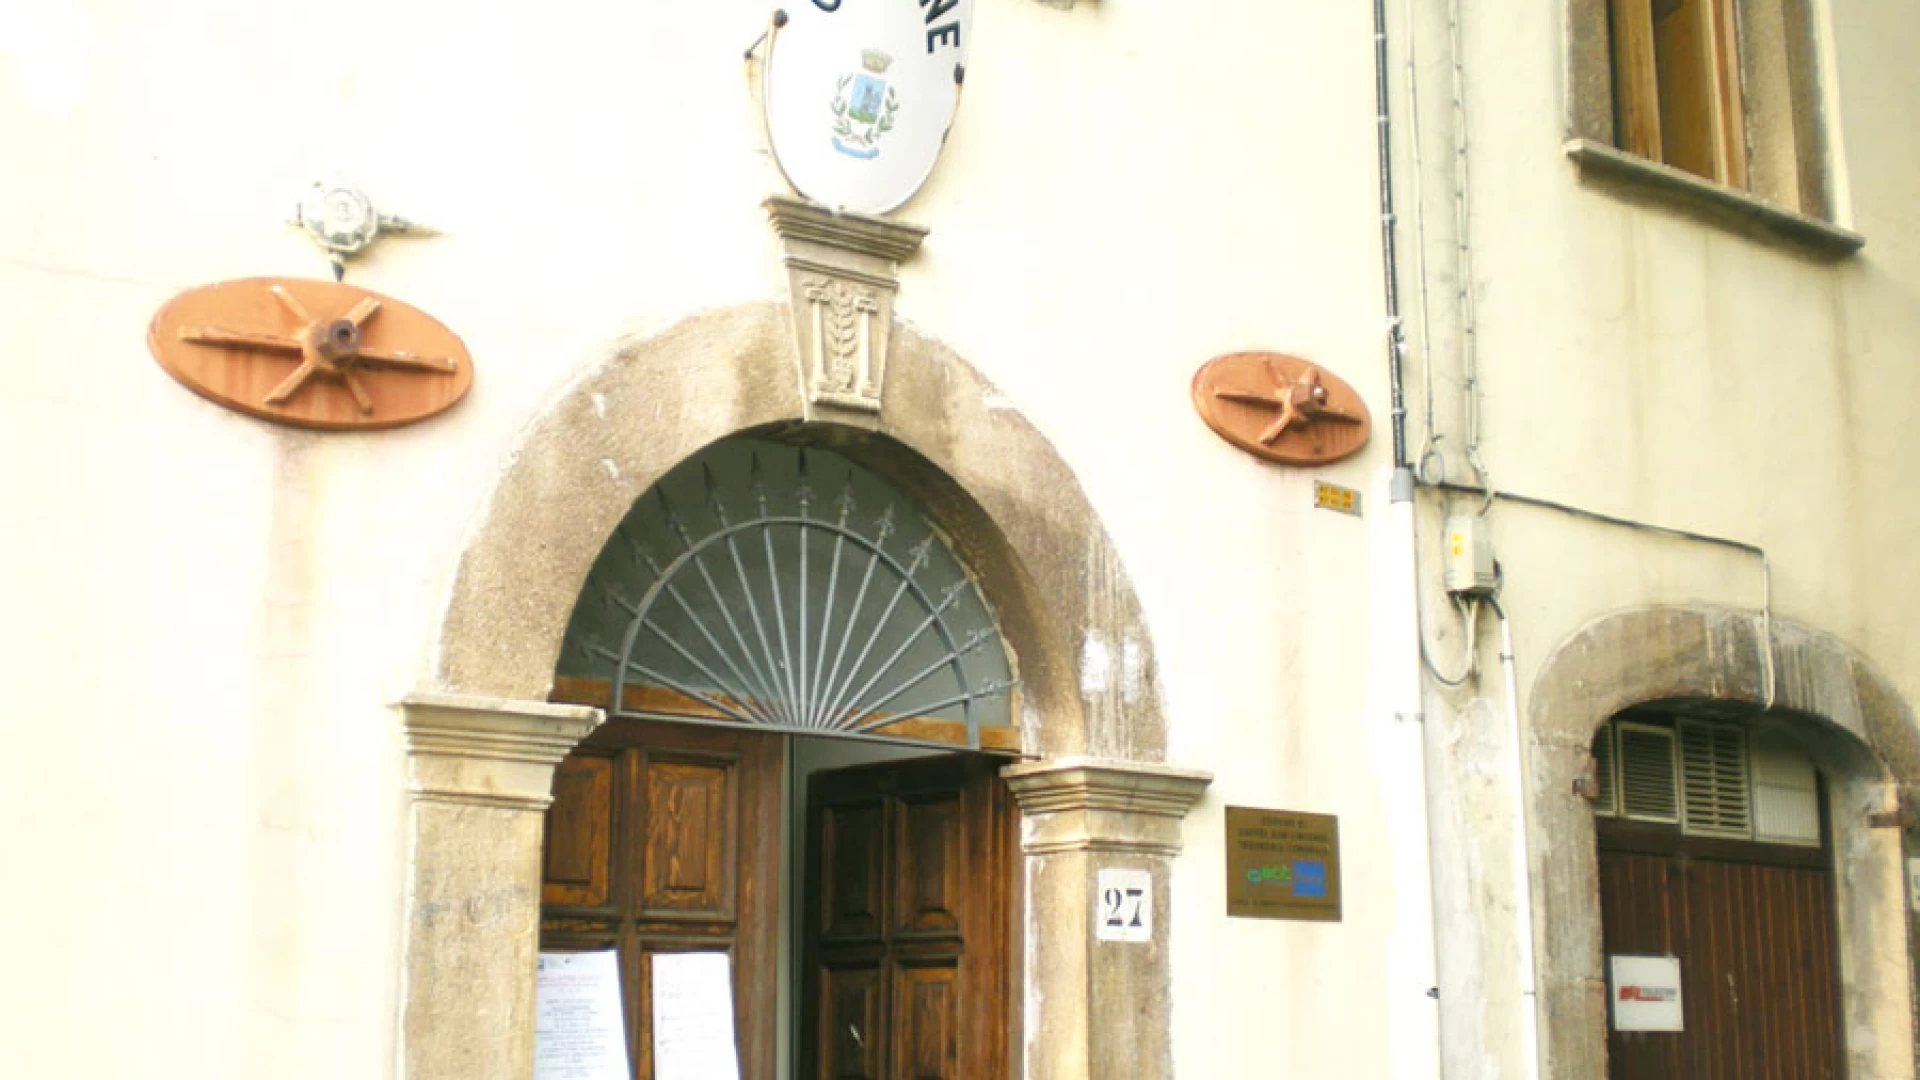 Castel San Vincenzo: “Ma un sindaco interdetto può prendere parte alle riunioni del Pnalm? ”. La nota di Amelia Iannotta al presidente Antonio Carrara.